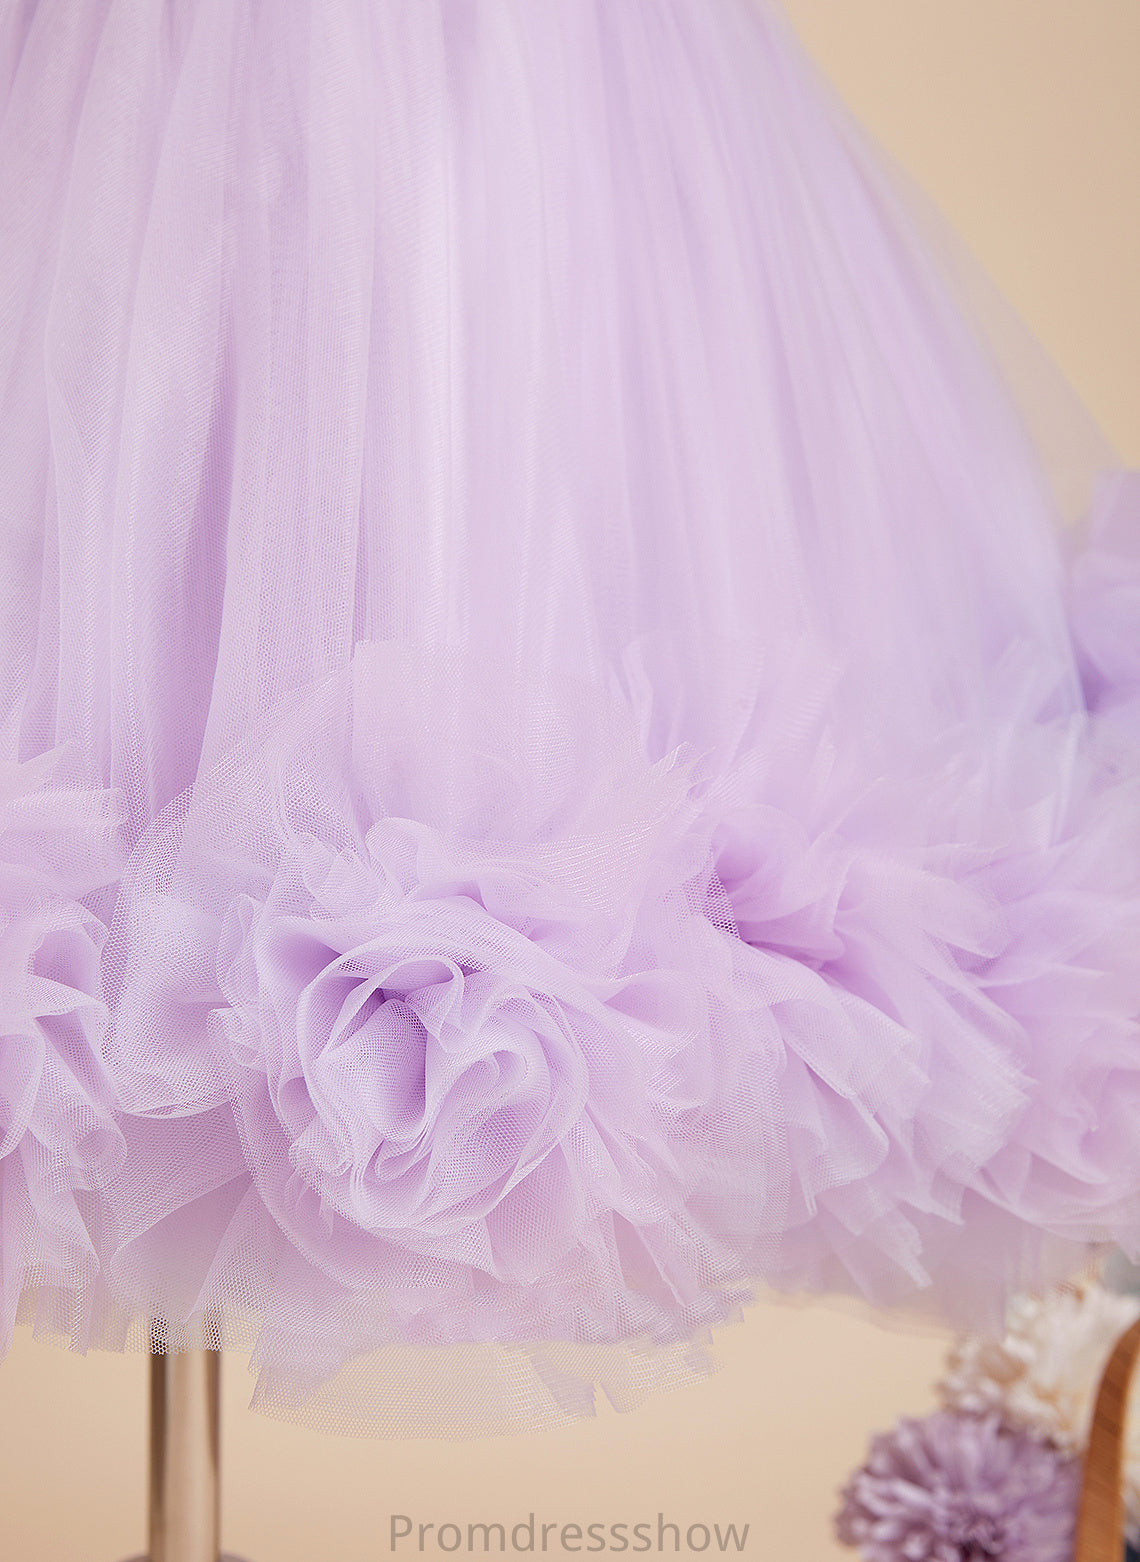 Dress Scoop With Ball-Gown/Princess Neck Flower(s)/Sequins - Flower Girl Dresses Noemi Sleeveless Flower Knee-length Satin/Tulle Girl